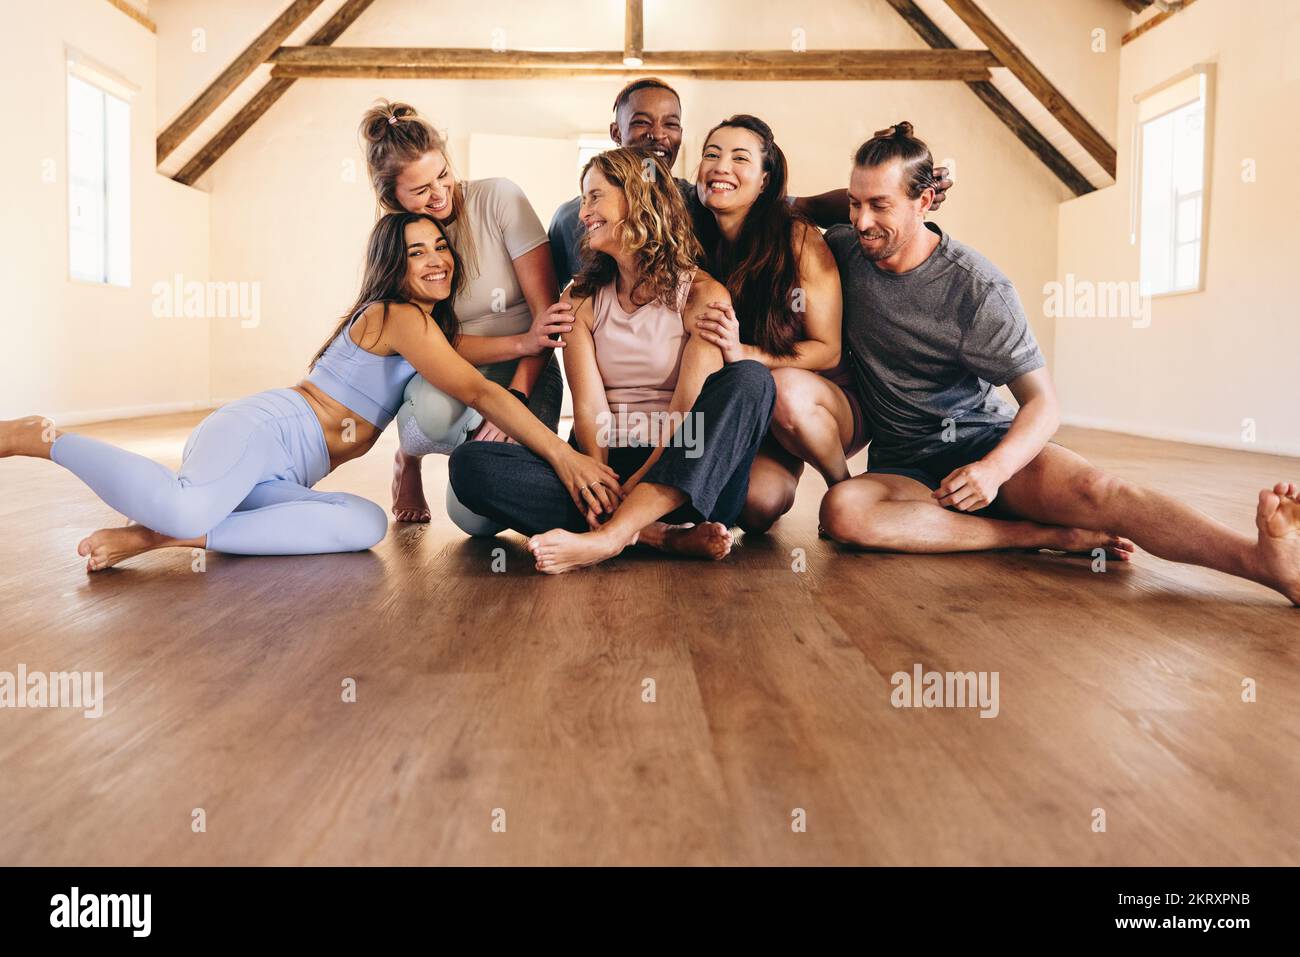 Le persone ridono insieme mentre si siedono sul pavimento in uno studio di yoga. Amici felici di fitness che prendono una pausa da una sessione di yoga. Gruppo di diversi peopl Foto Stock